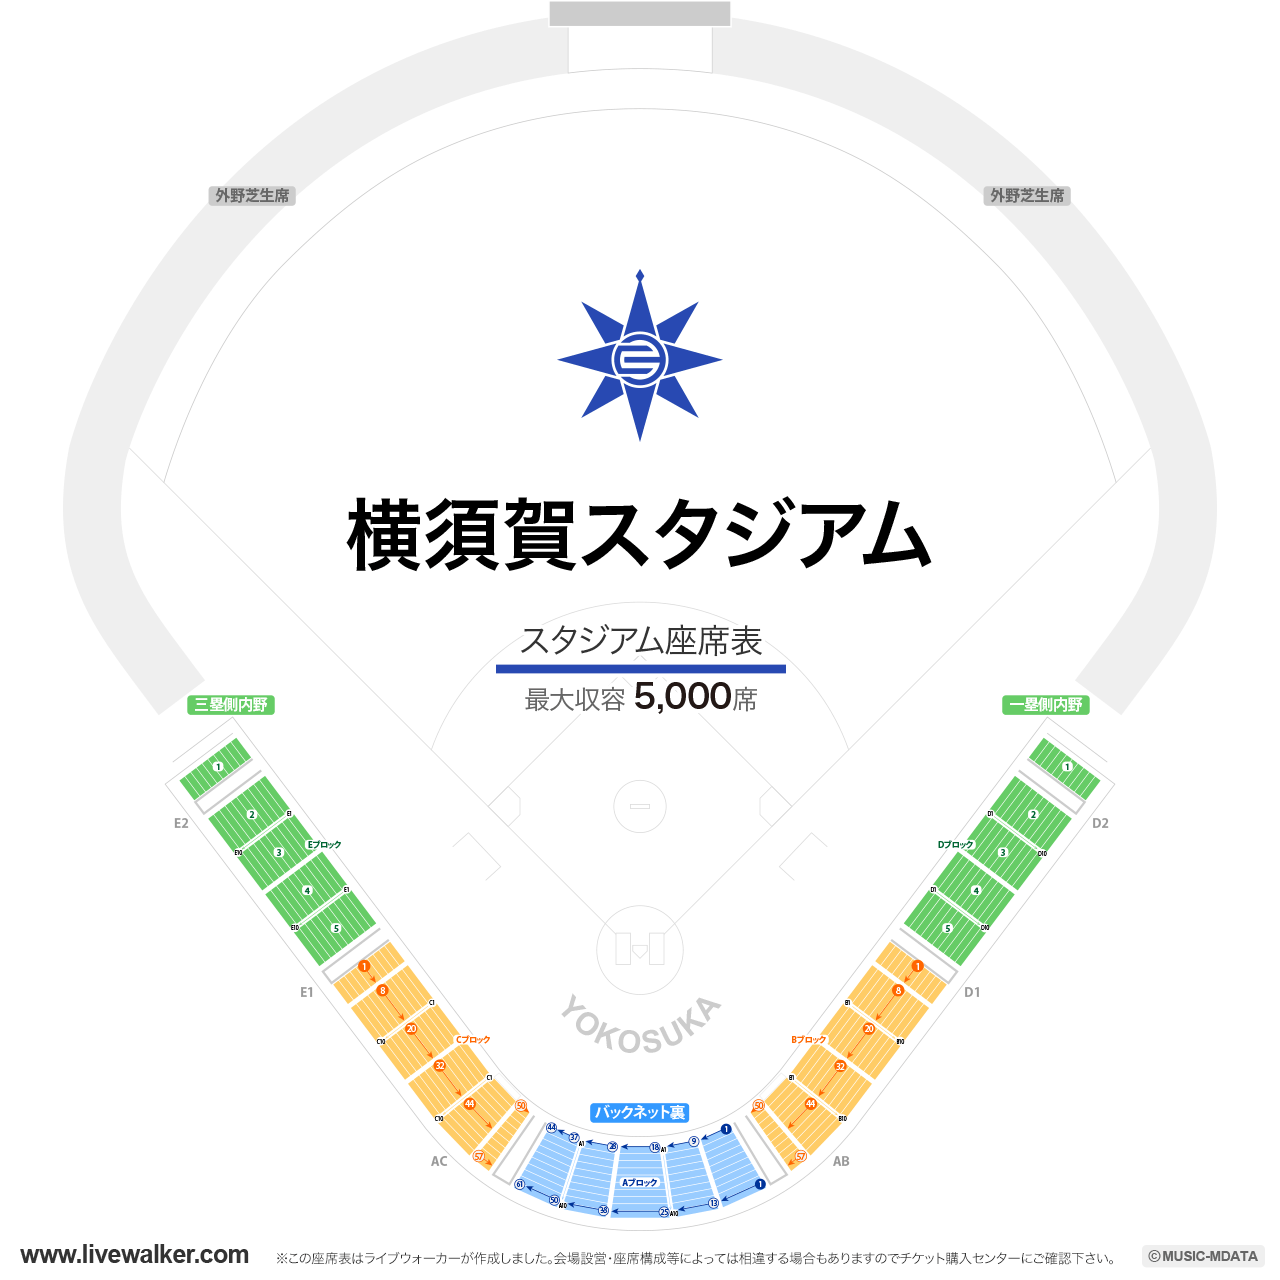 横須賀スタジアムの座席表